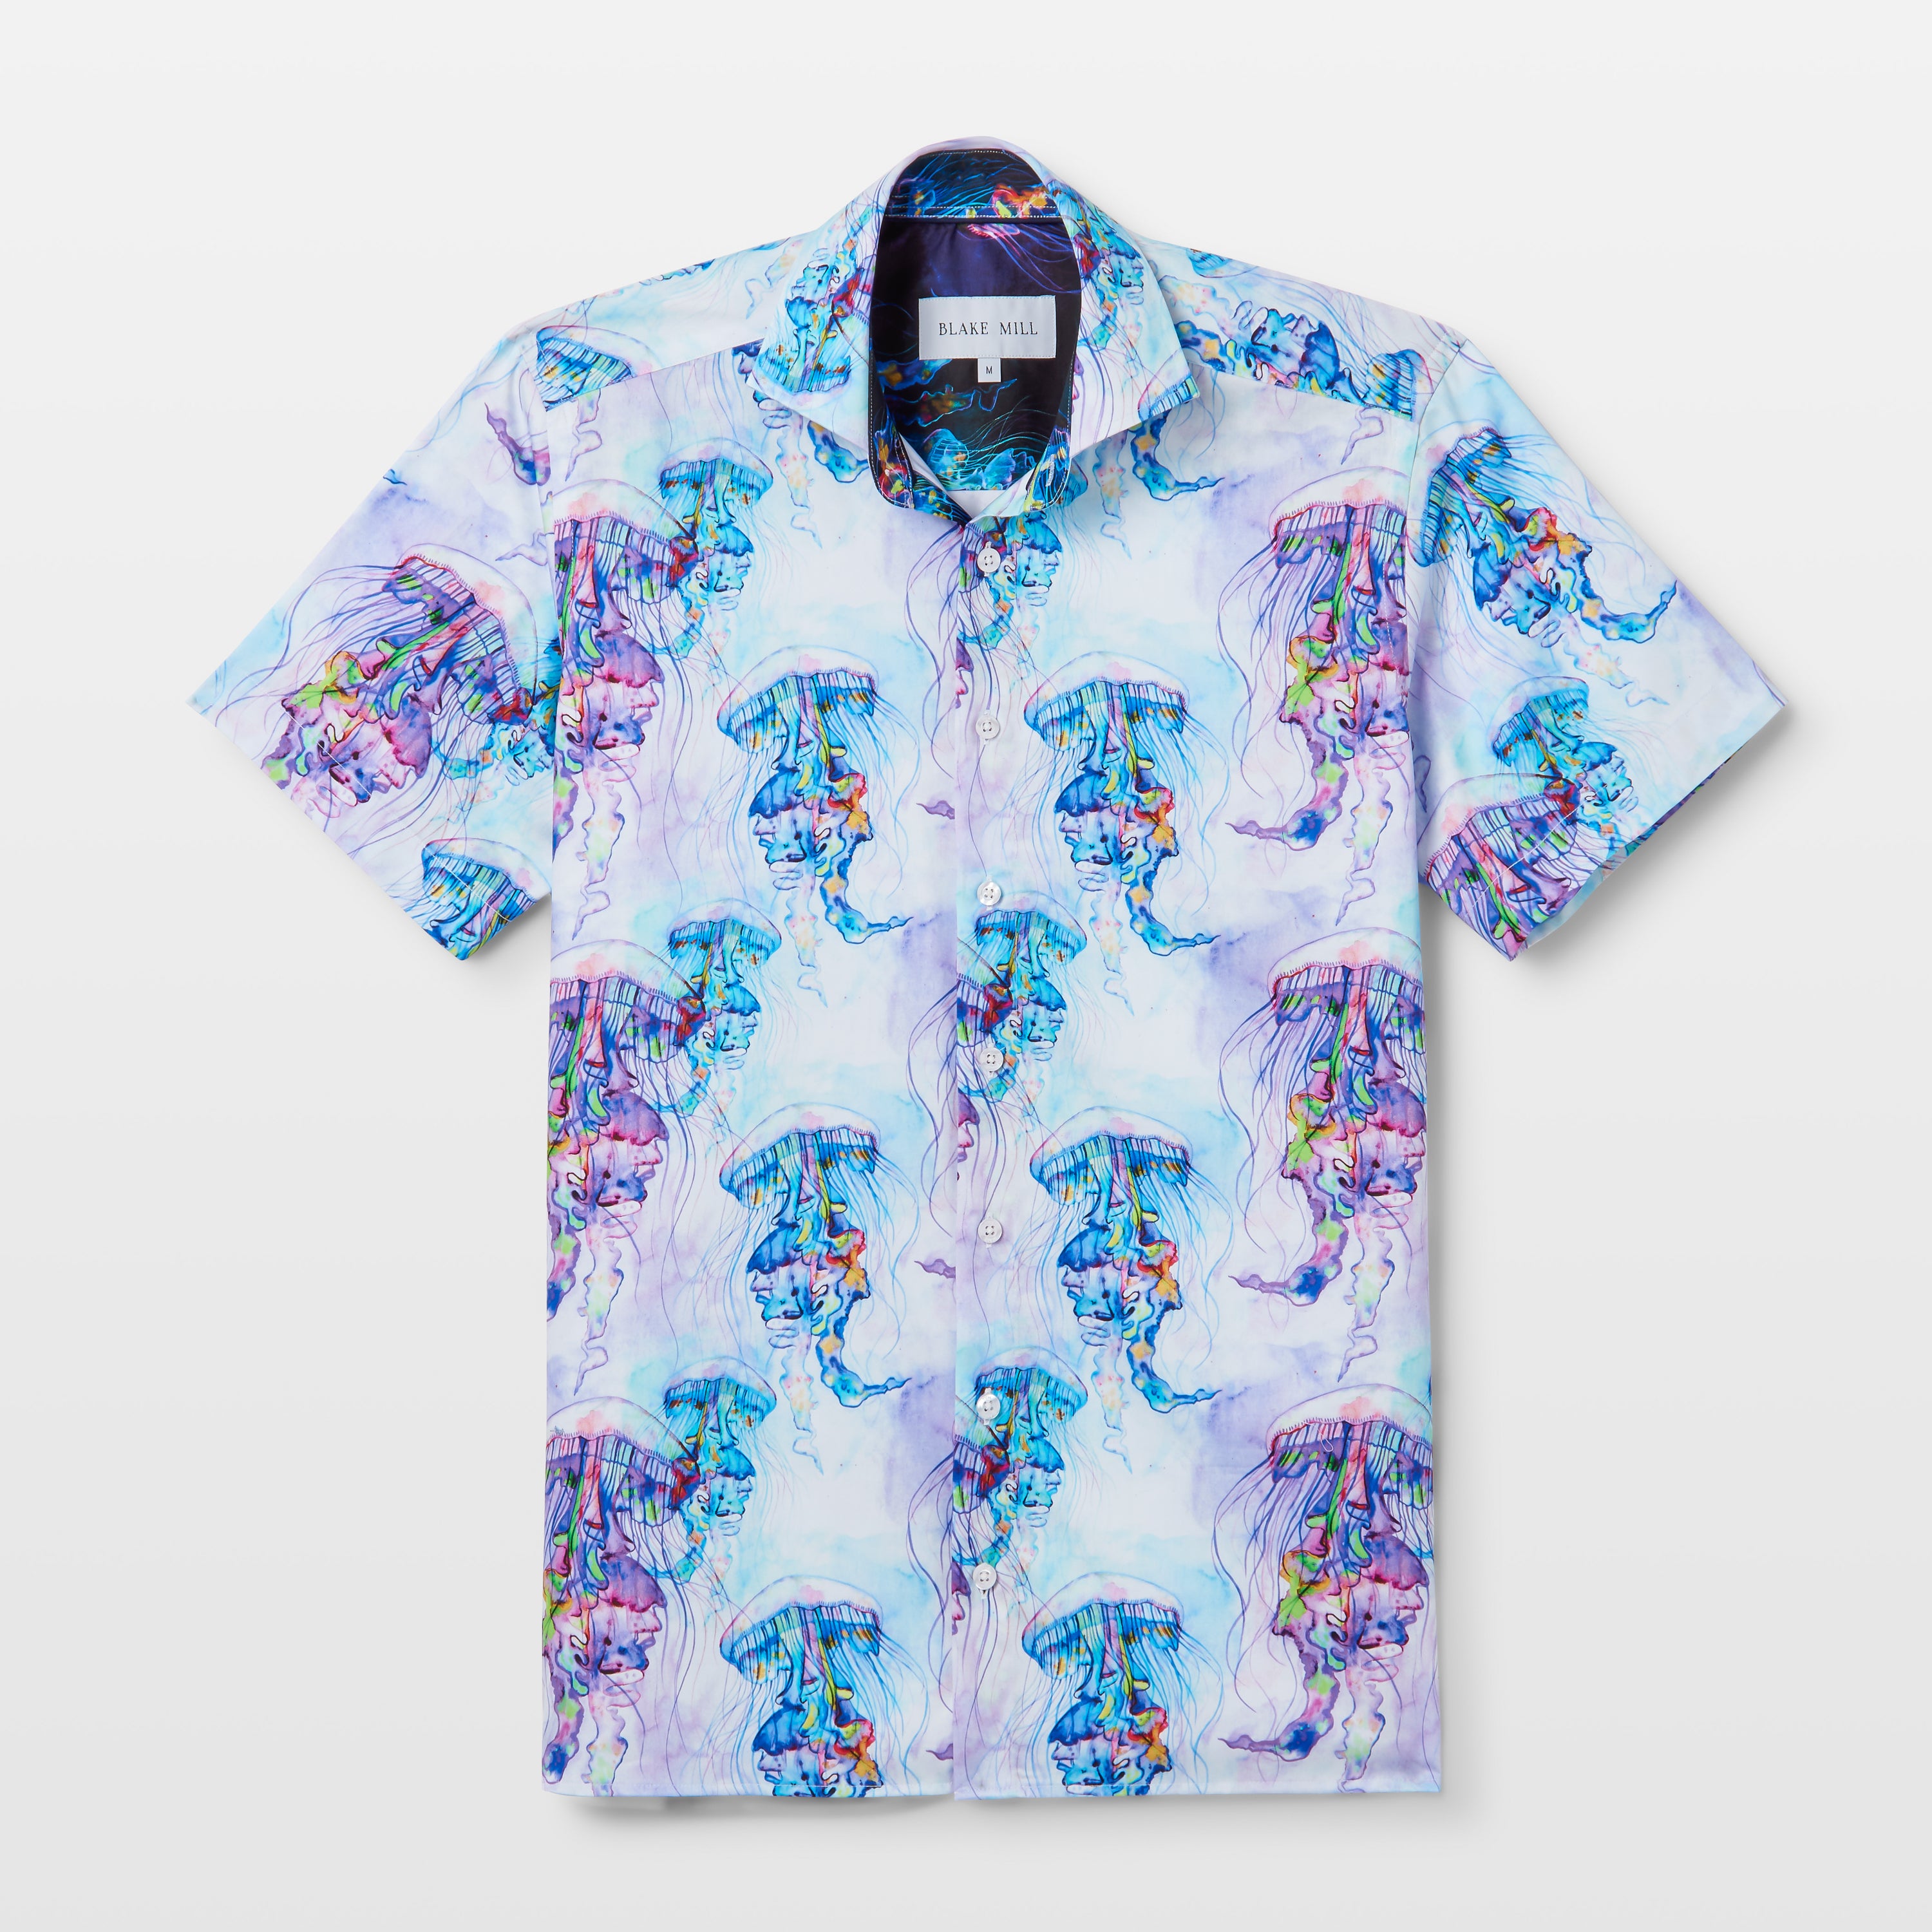 The Jellyfish Short Sleeve Shirt